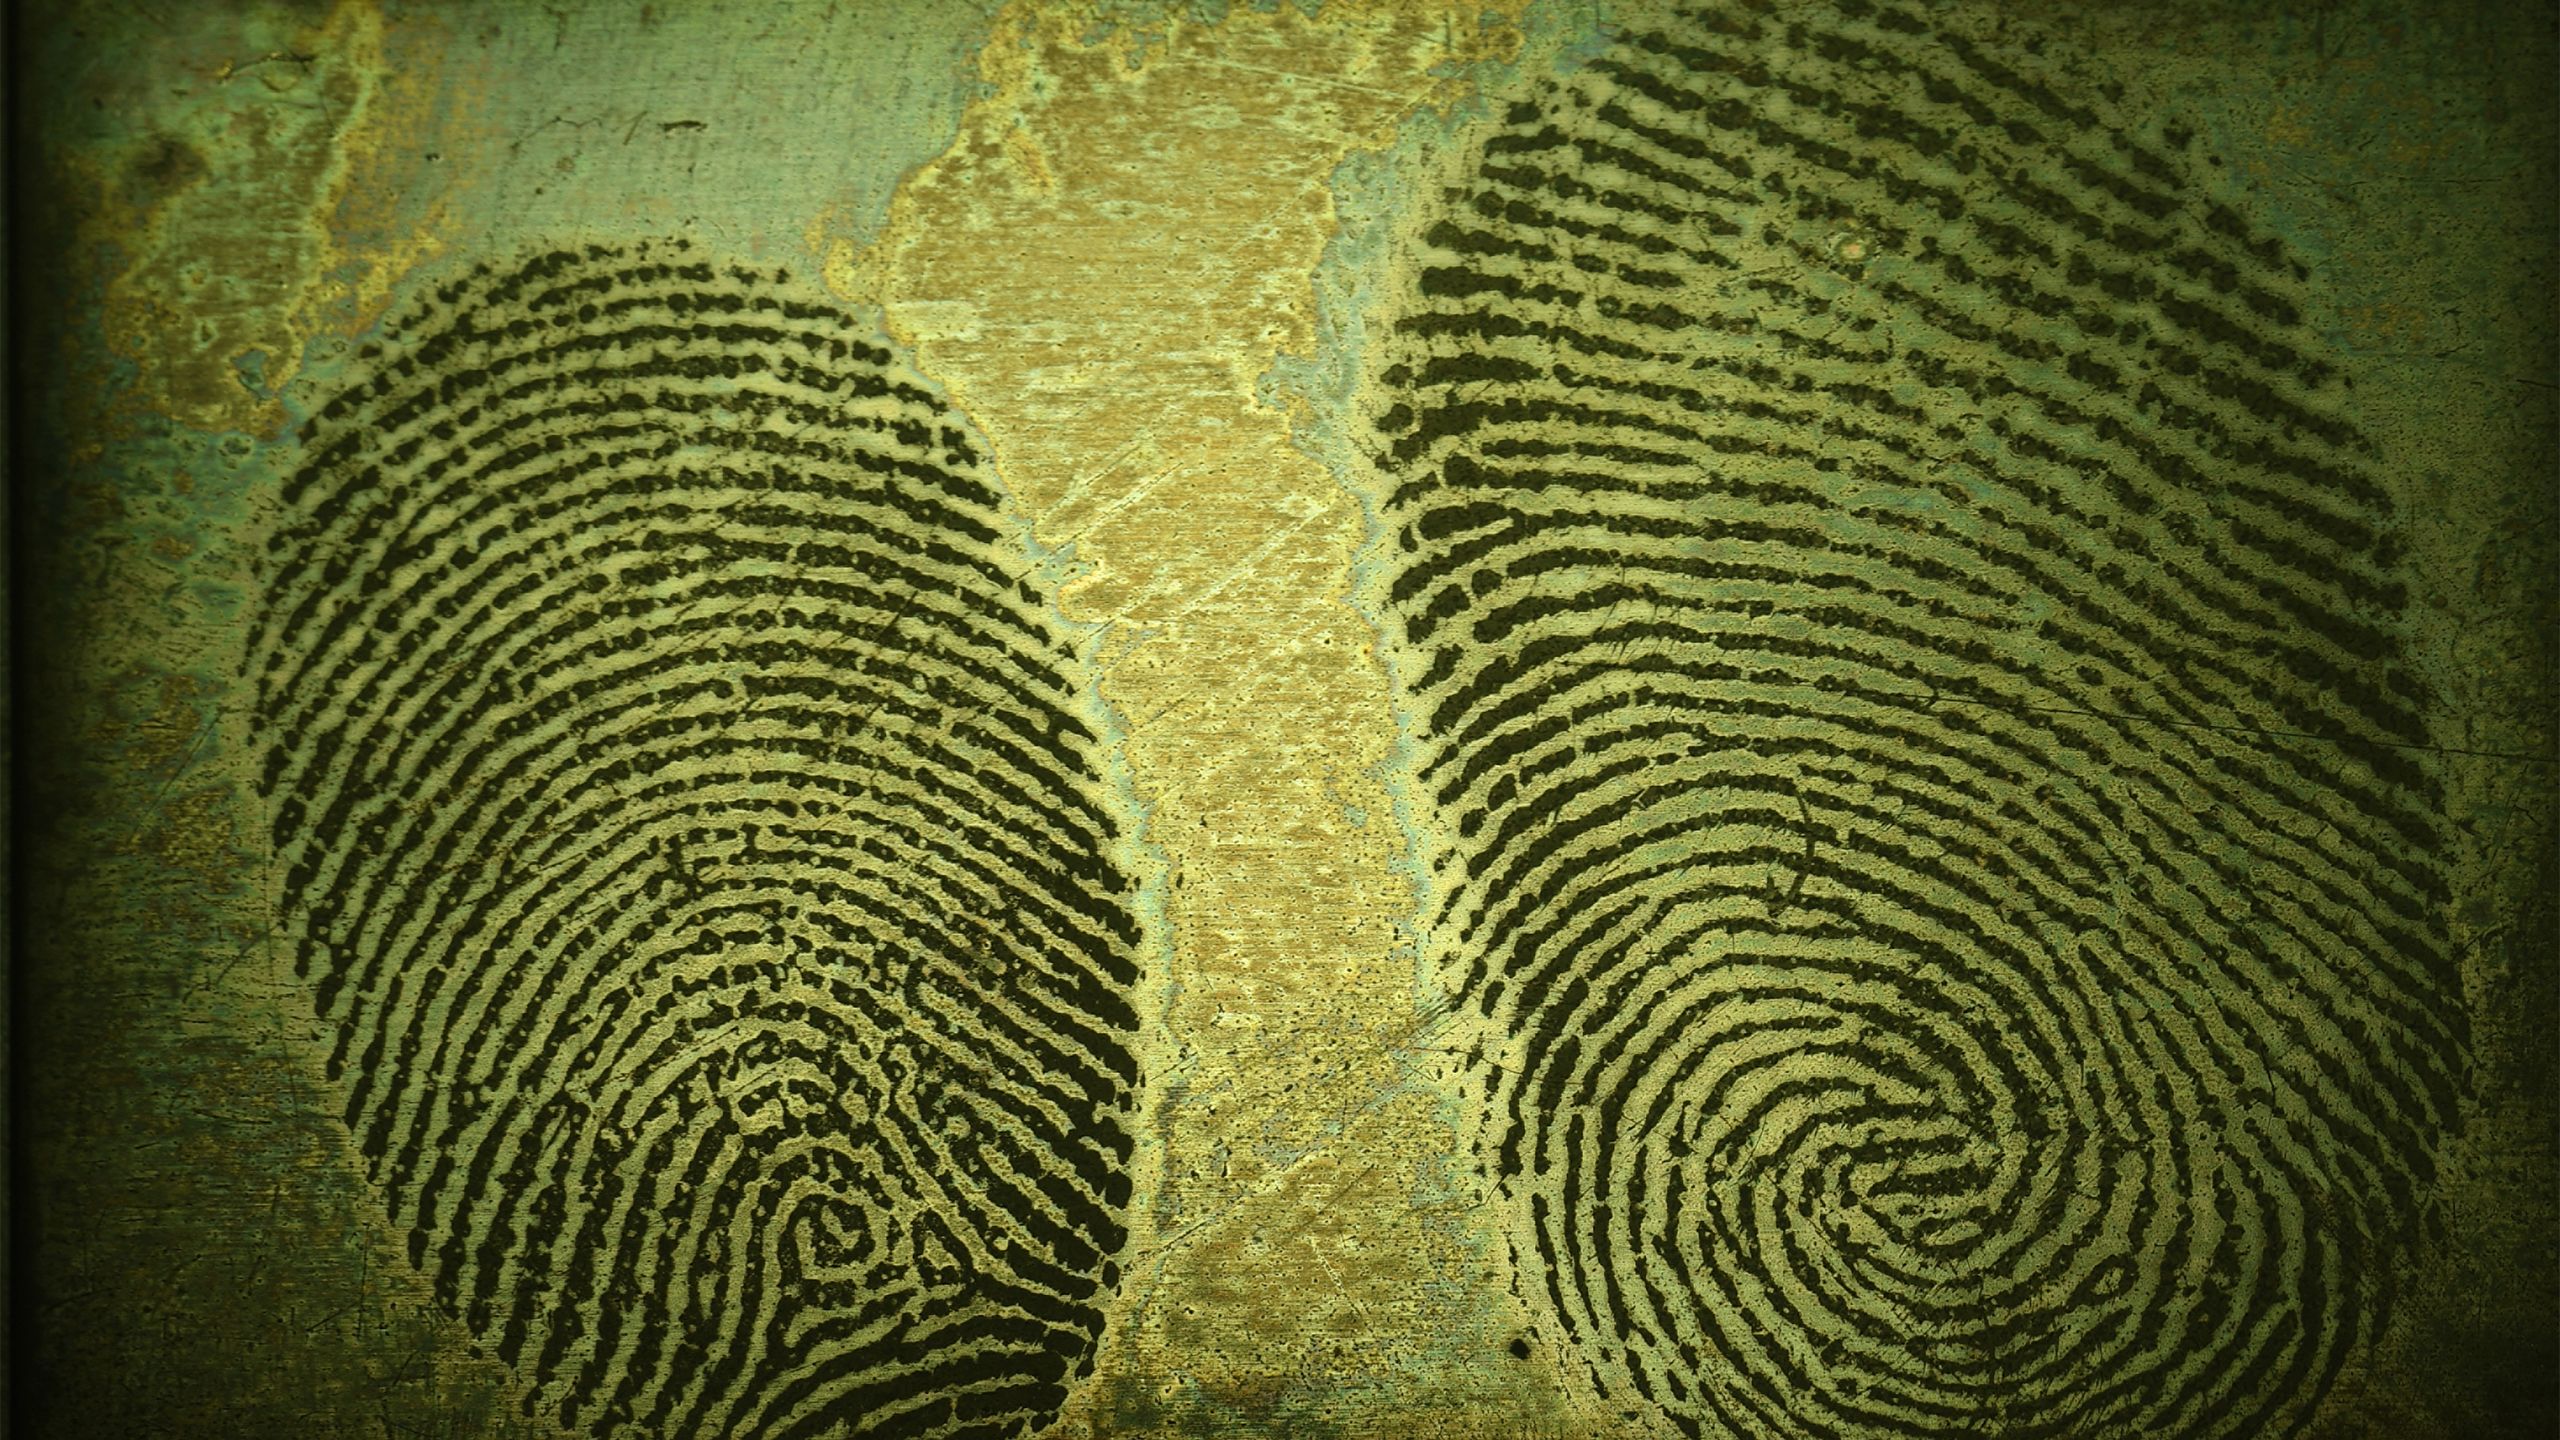 Image of fingerprints